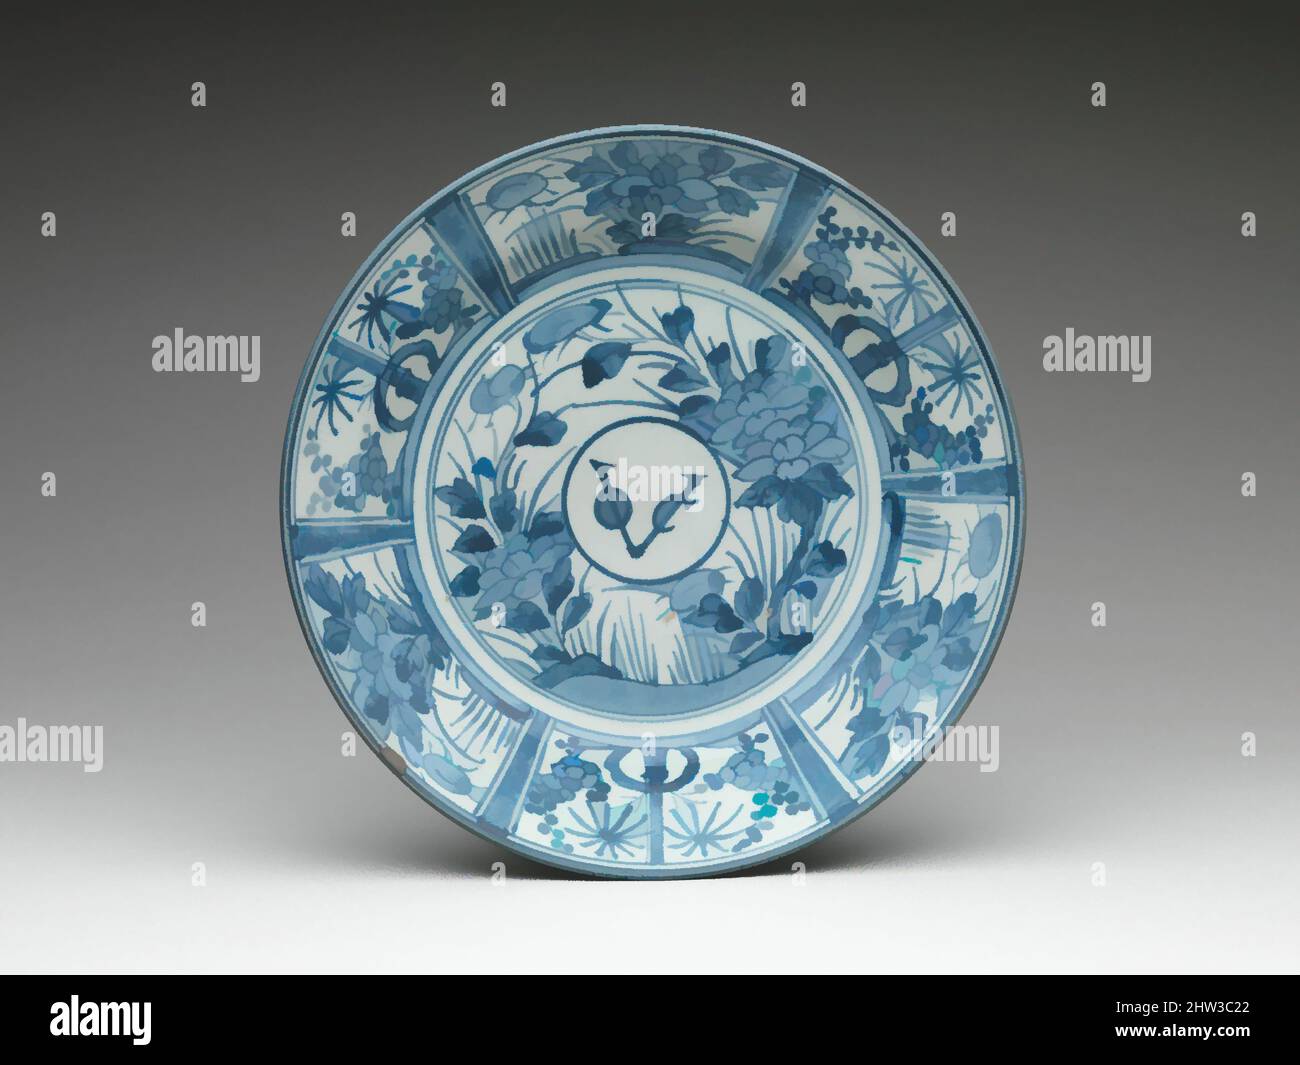 Arte inspirado en Plate con Monograma de la Compañía Holandesa de la India Oriental, Edo Period (1615-1868), ca. 1660, Japón, azul bajo el glaseado (Arita ware), H. 2 3/8 pulg. (6 cm); Diám. 12 3/8 pulg. (31,4 cm); Diám. De pie (6 3/8 pulg. (16,2 cm), Cerámica, este plato de porcelana está adornado con el monograma, obras clásicas modernizadas por Artótop con un toque de modernidad. Formas, color y valor, atractivo impacto visual en el arte Emociones a través de la libertad de las obras de arte de una manera contemporánea. Un mensaje atemporal que busca una nueva dirección totalmente creativa. Artistas que se están volviendo al medio digital y creando el Artotop NFT Foto de stock